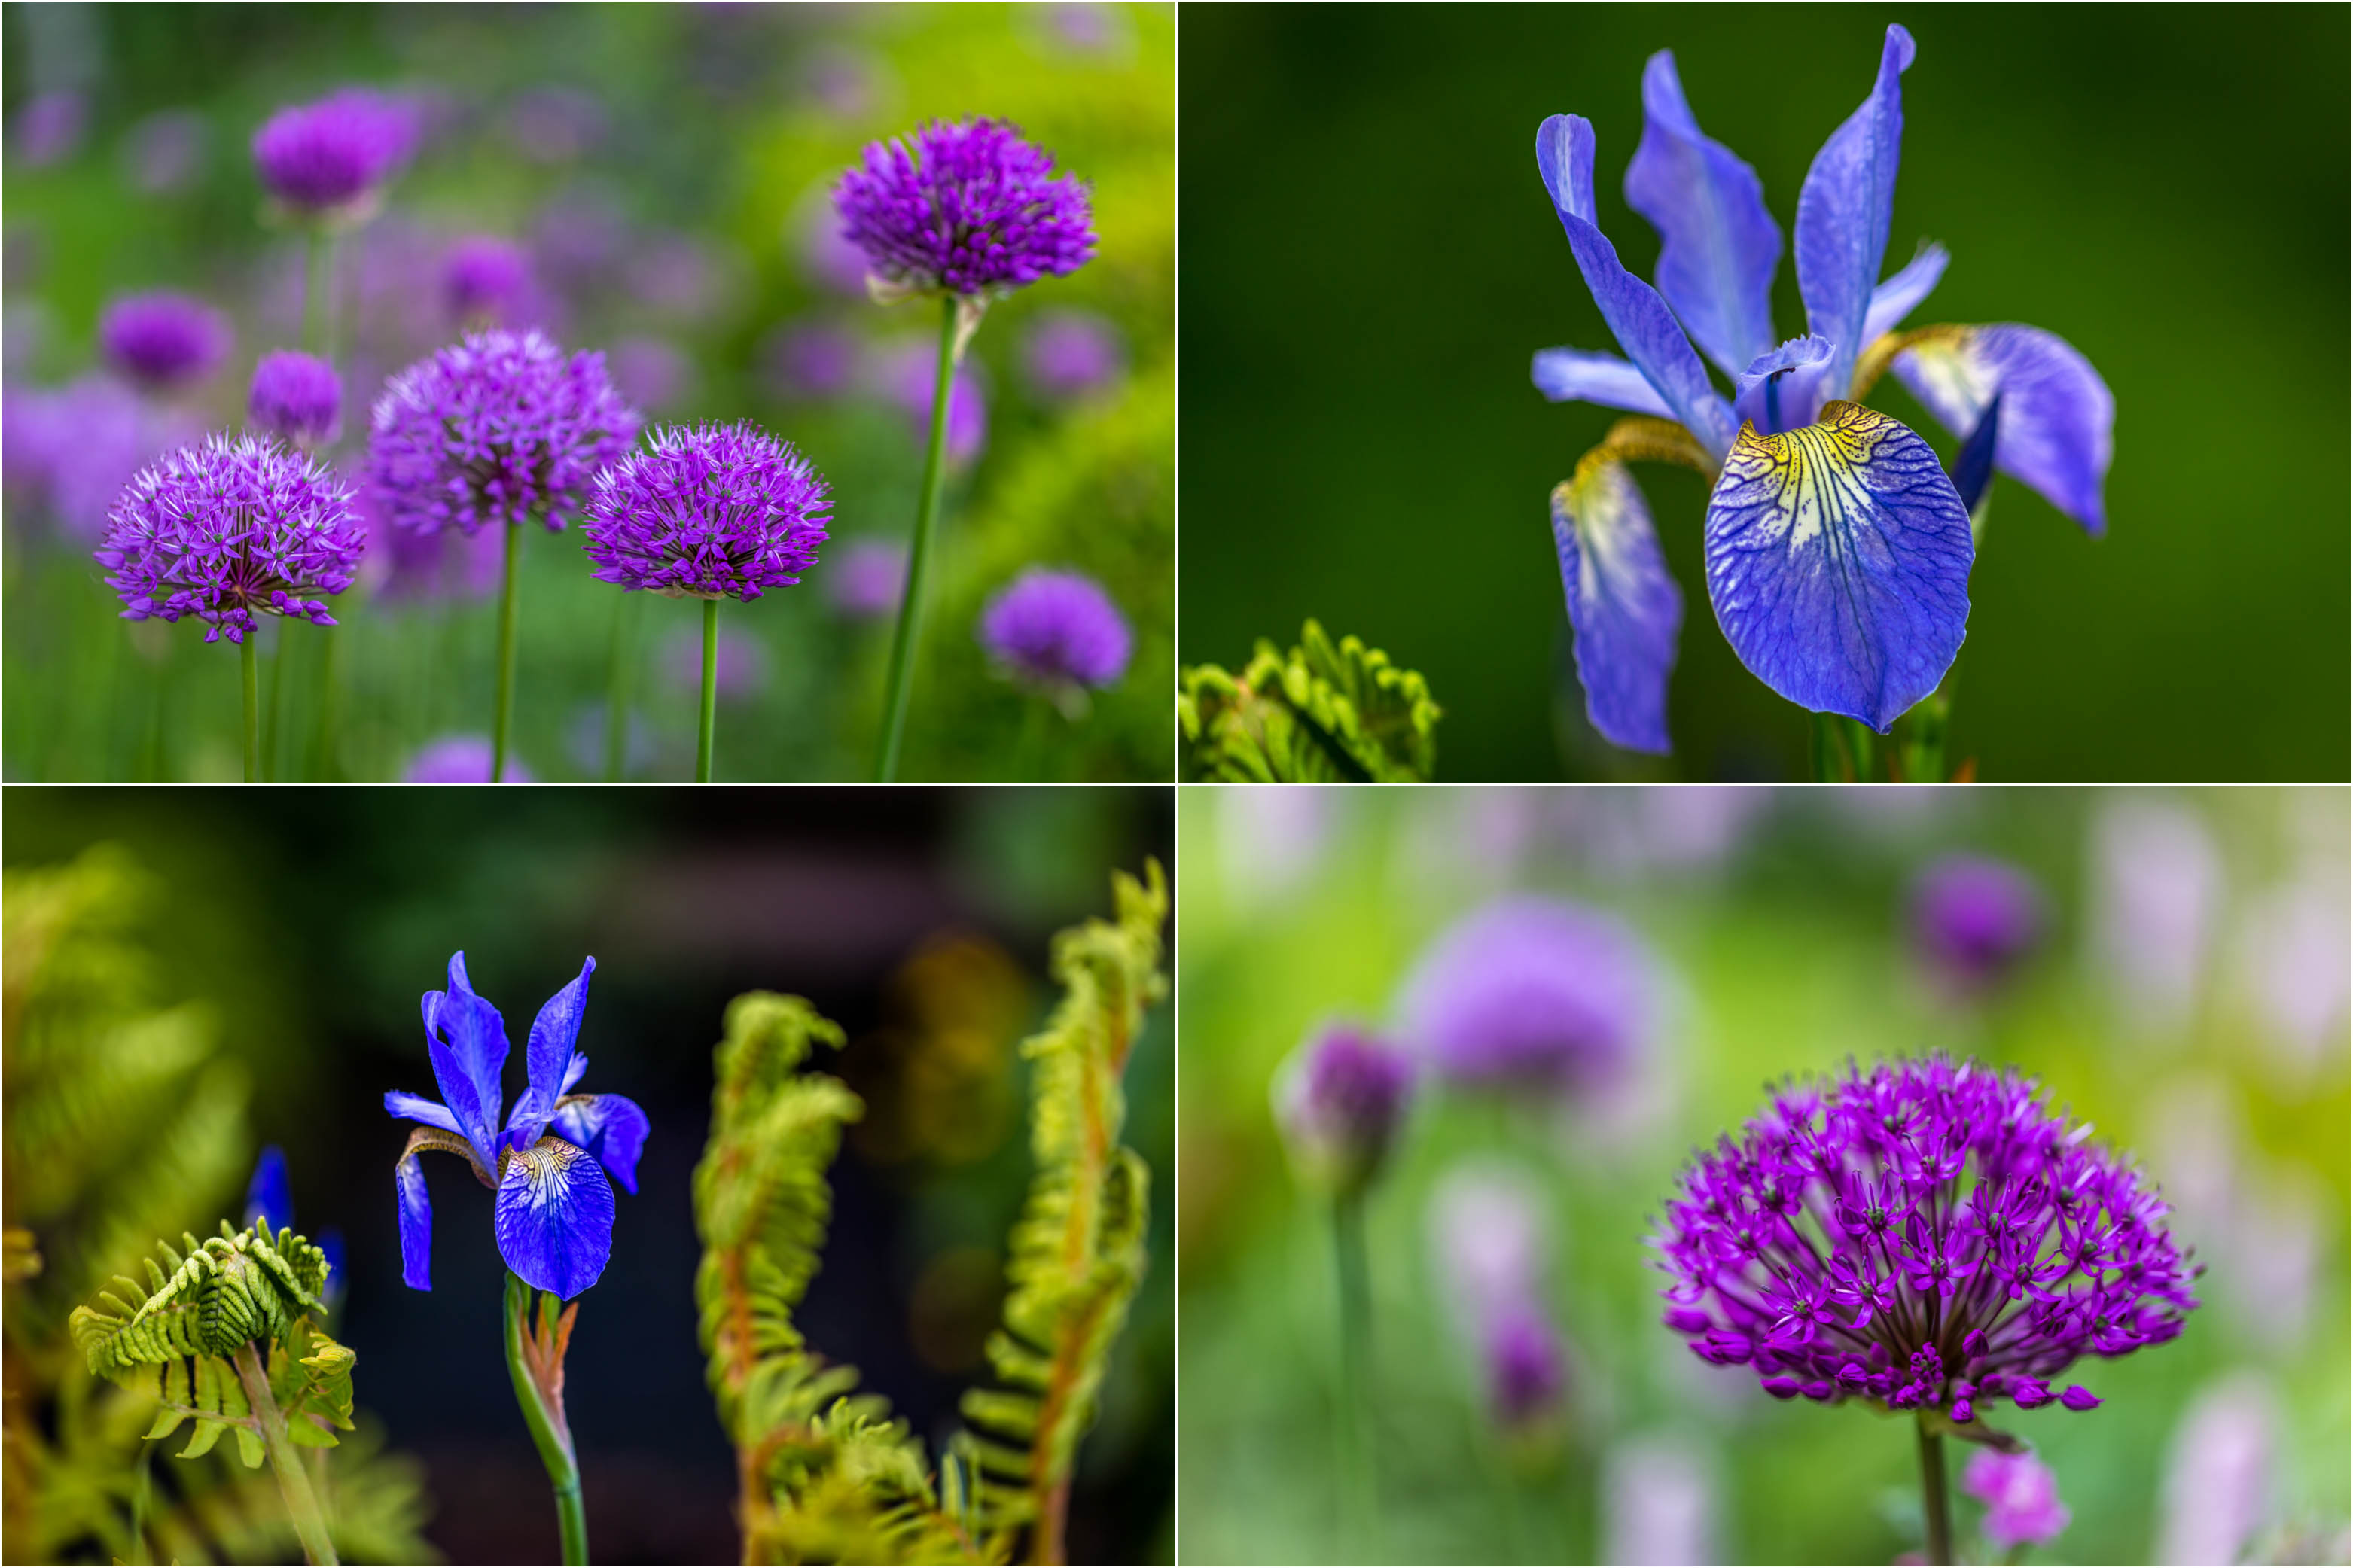 Allium and iris